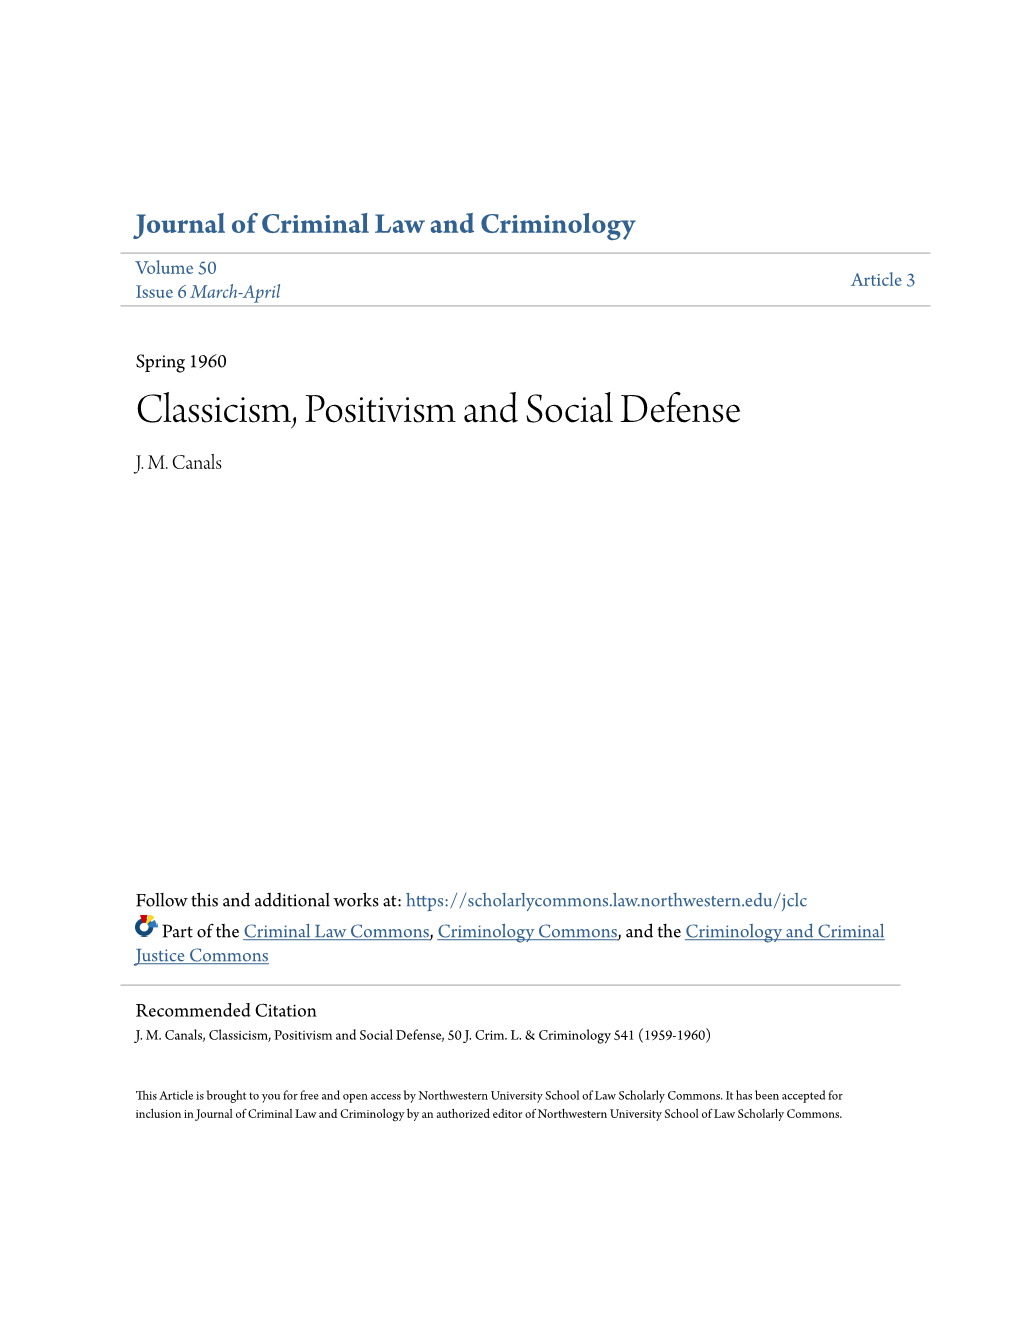 Classicism, Positivism and Social Defense J